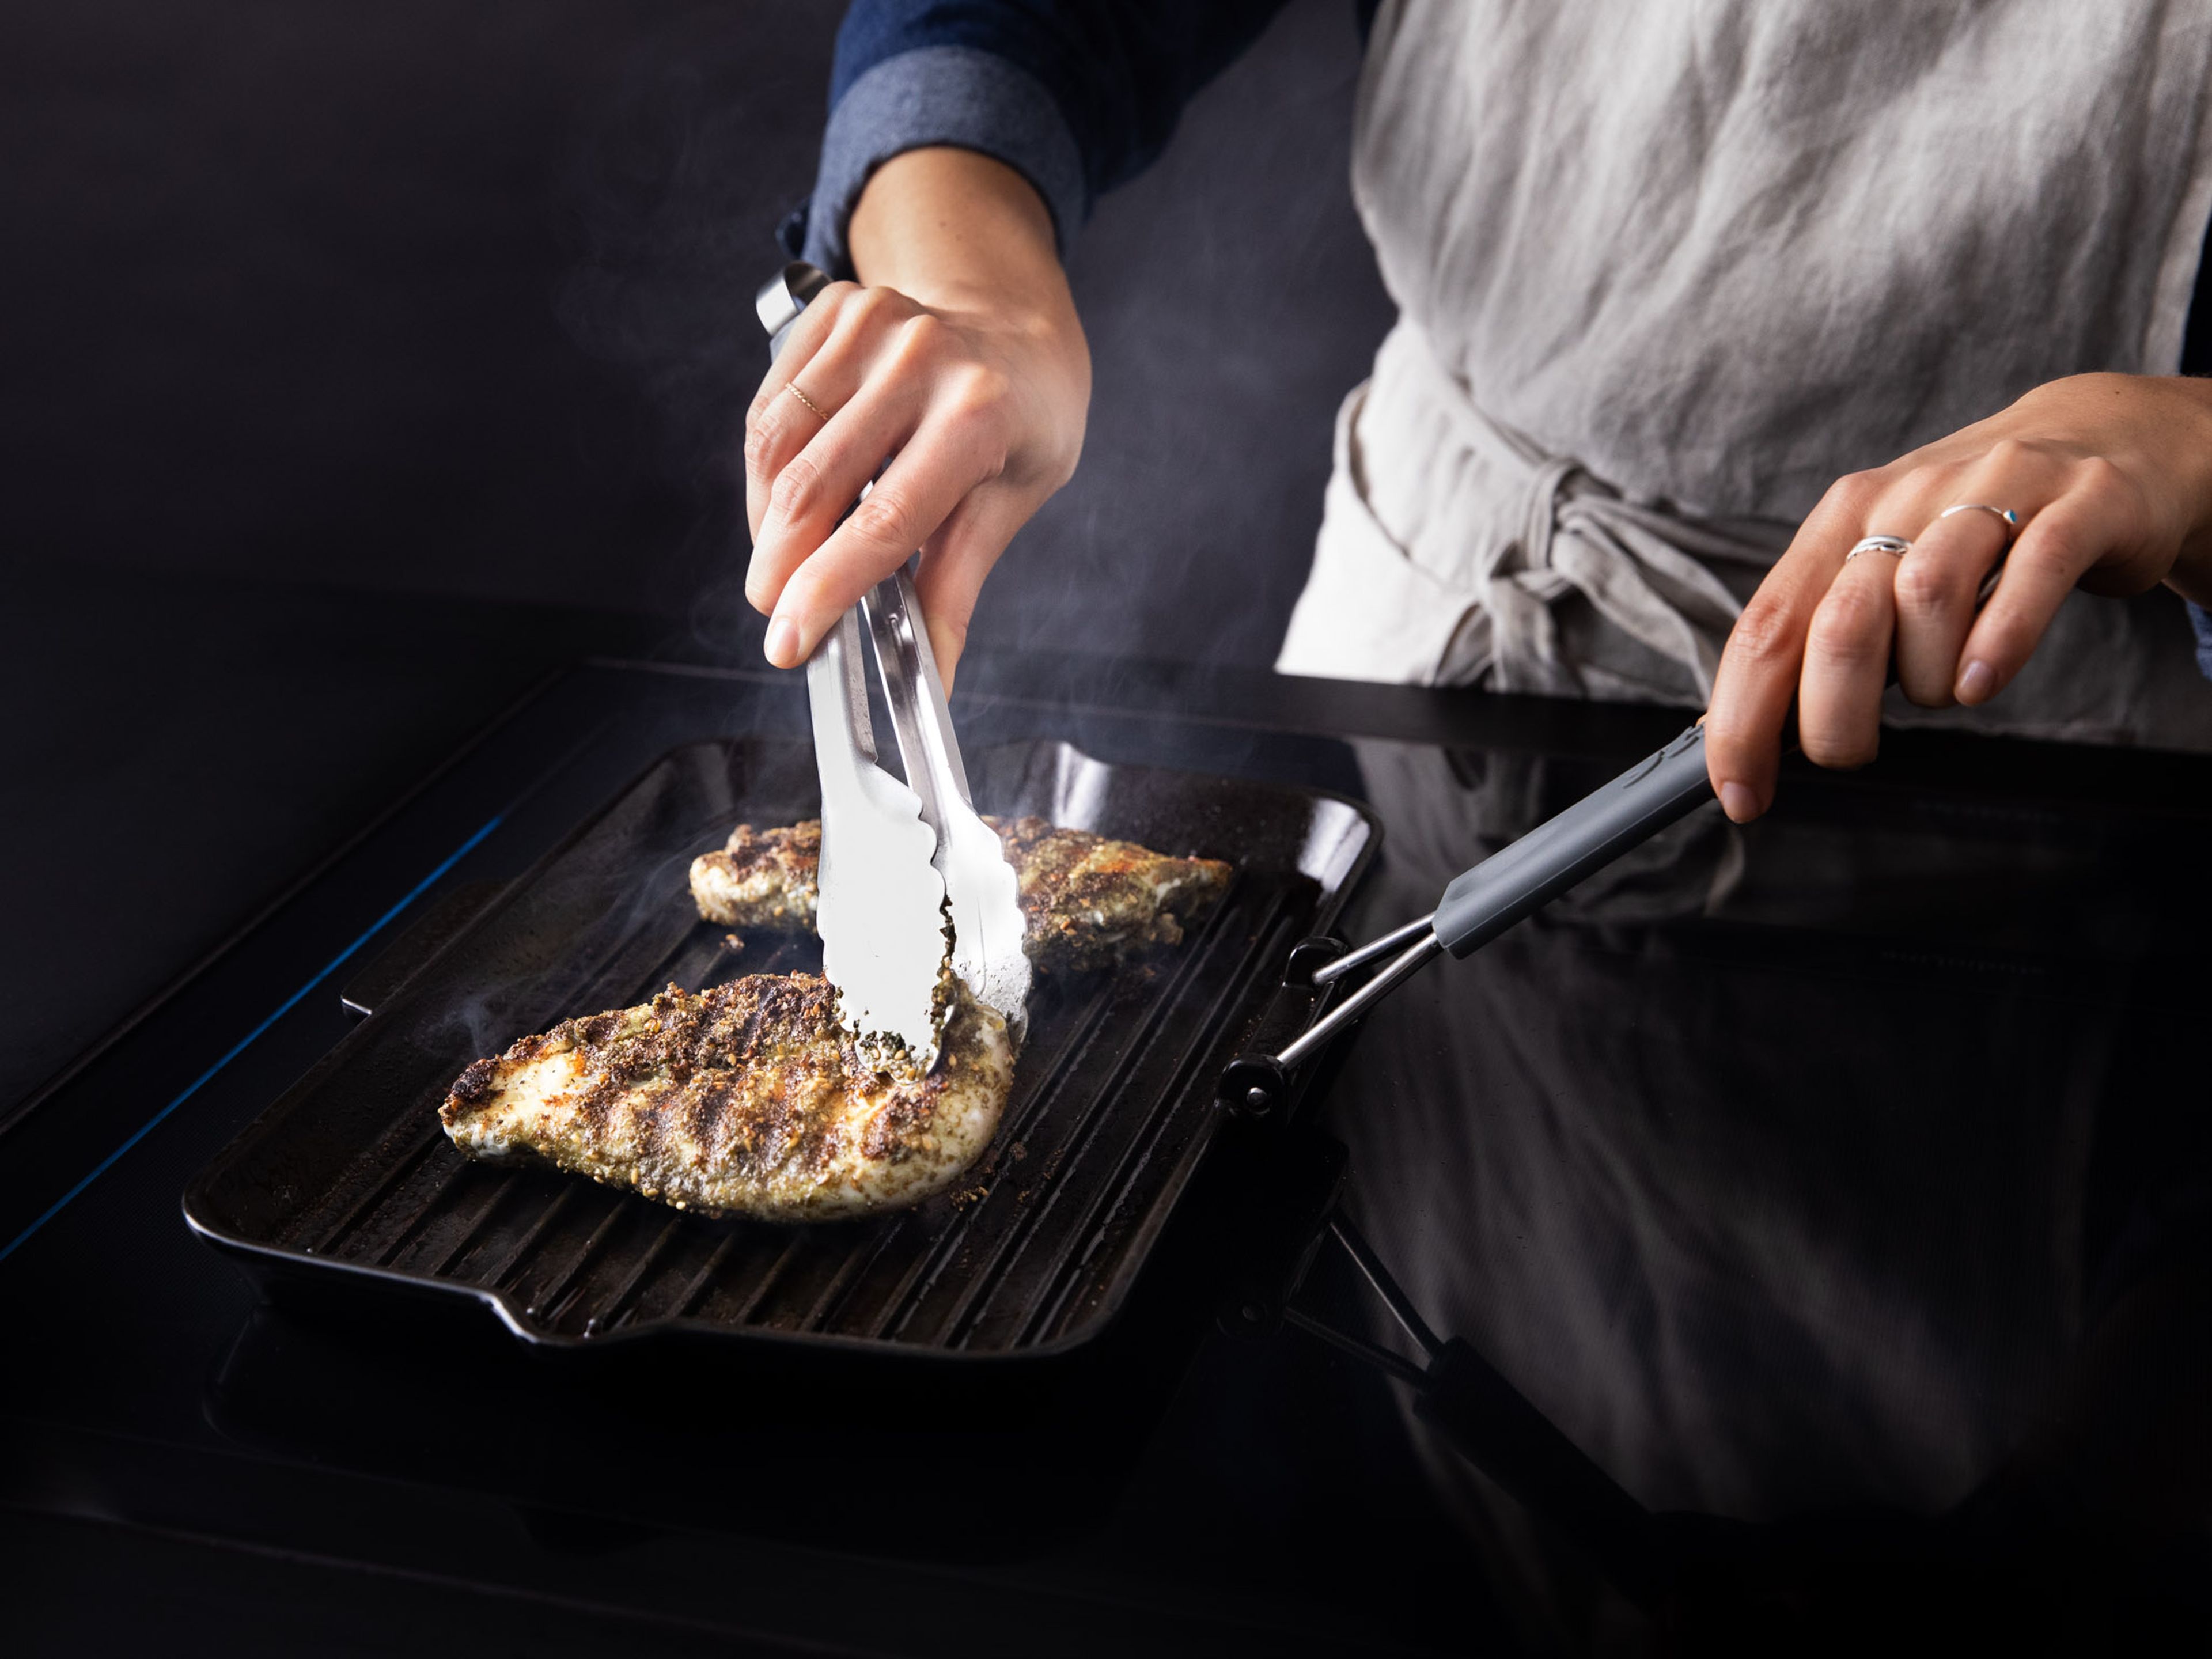 Öl in eine Grillpfanne geben und erhitzen, Hähnchenbrustfilets dazugeben und ca. 5 – 8 Min. von jeder Seite anbraten, bis das Fleisch gar ist. Das Fleisch zur Seite legen und in Folie einwickeln, während du die Gurkenjoghurtsoße vorbereitest.